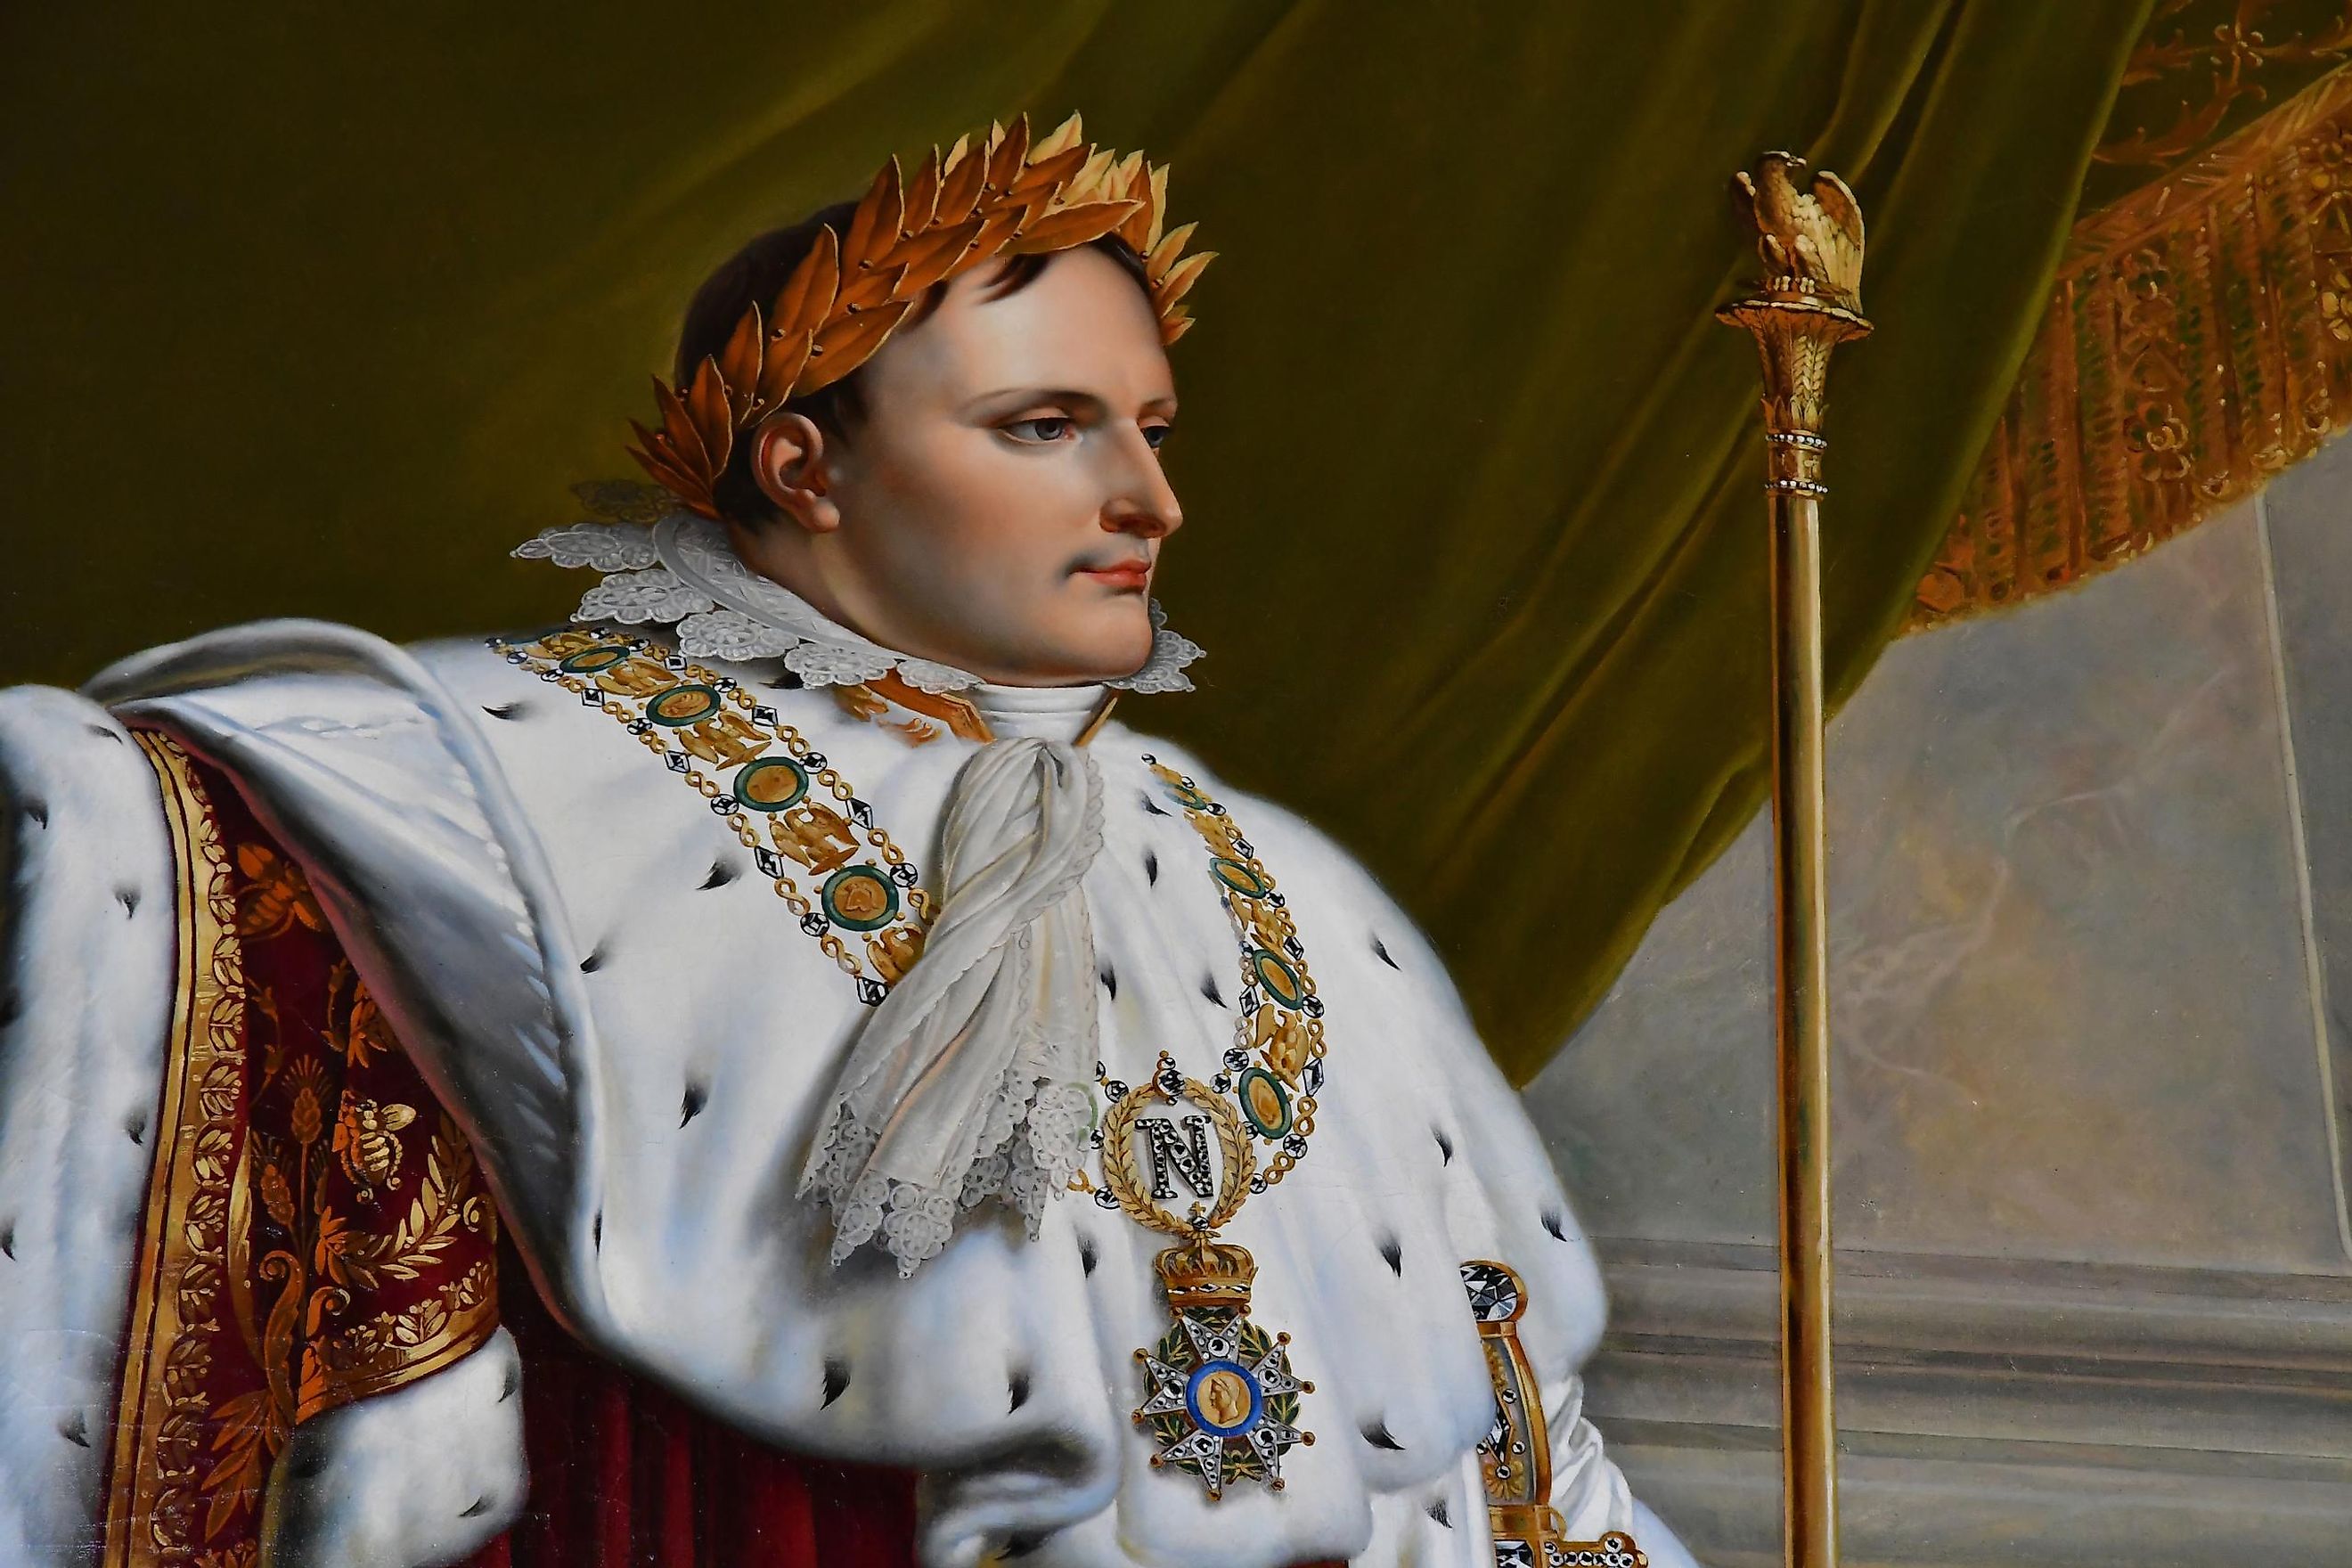 Napoleon - Wikipedia